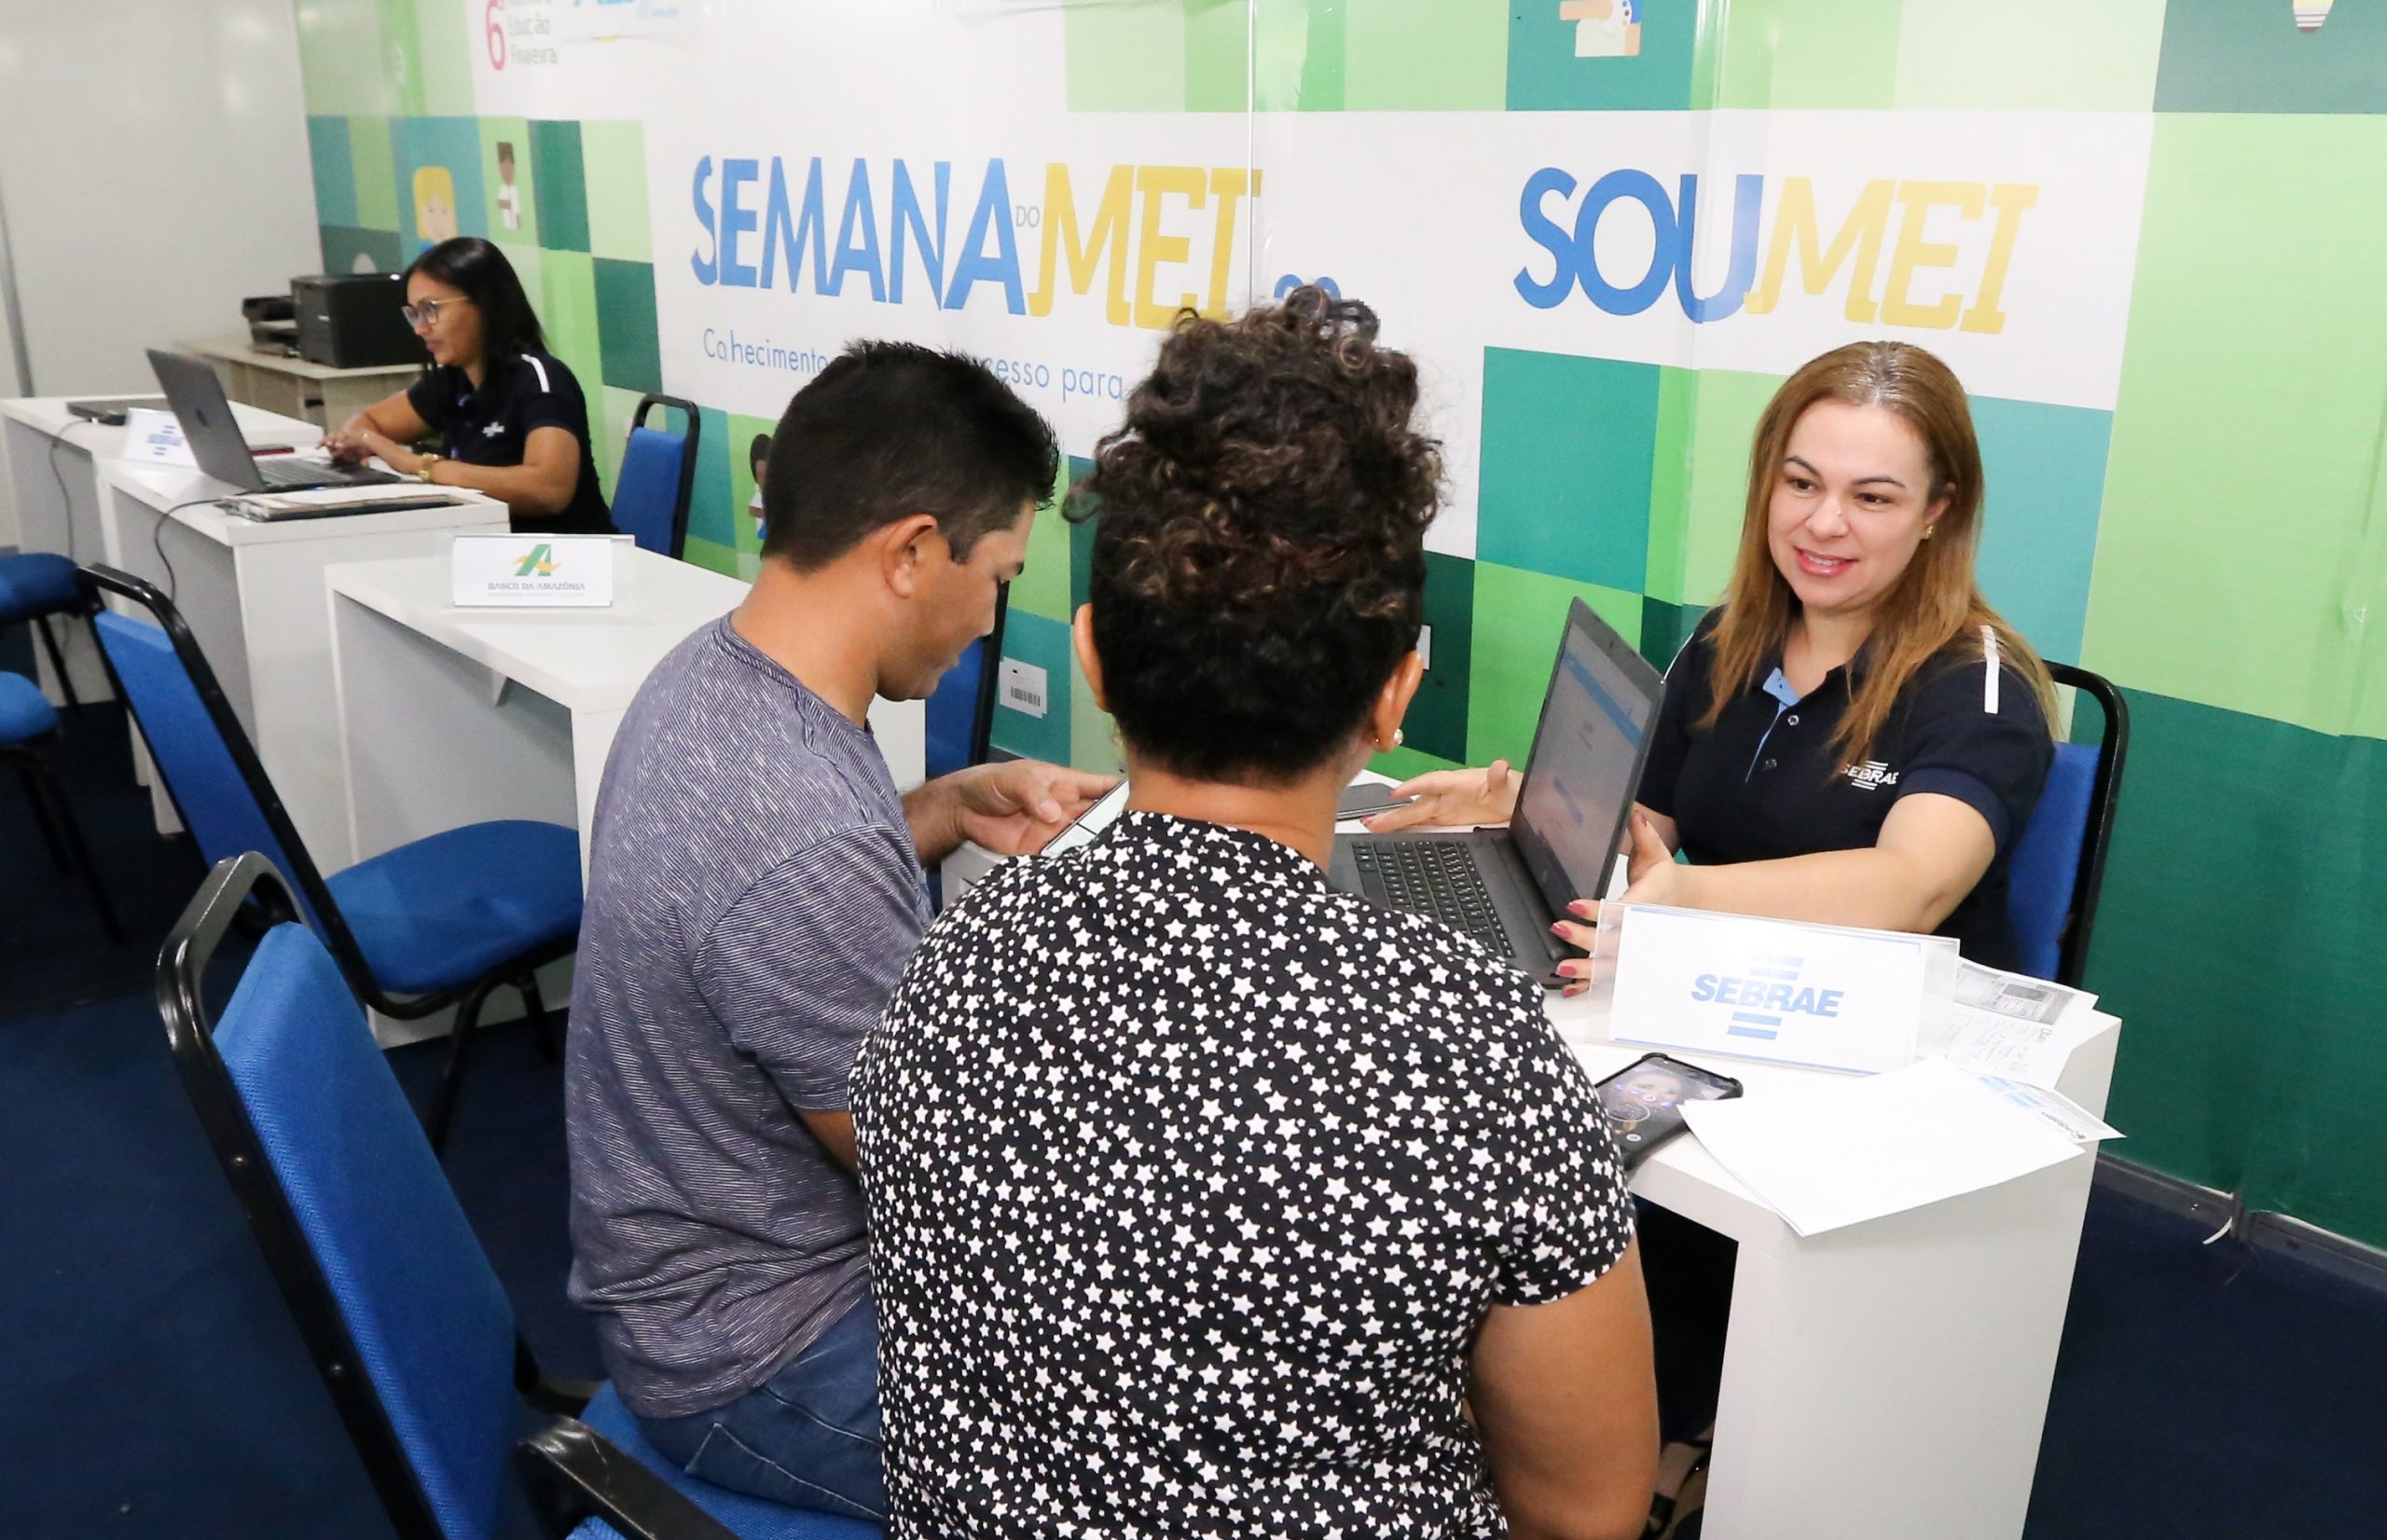 Sebrae Roraima promove a 13ª Semana do Empreendedor entre os dias 16 e 20 de maio